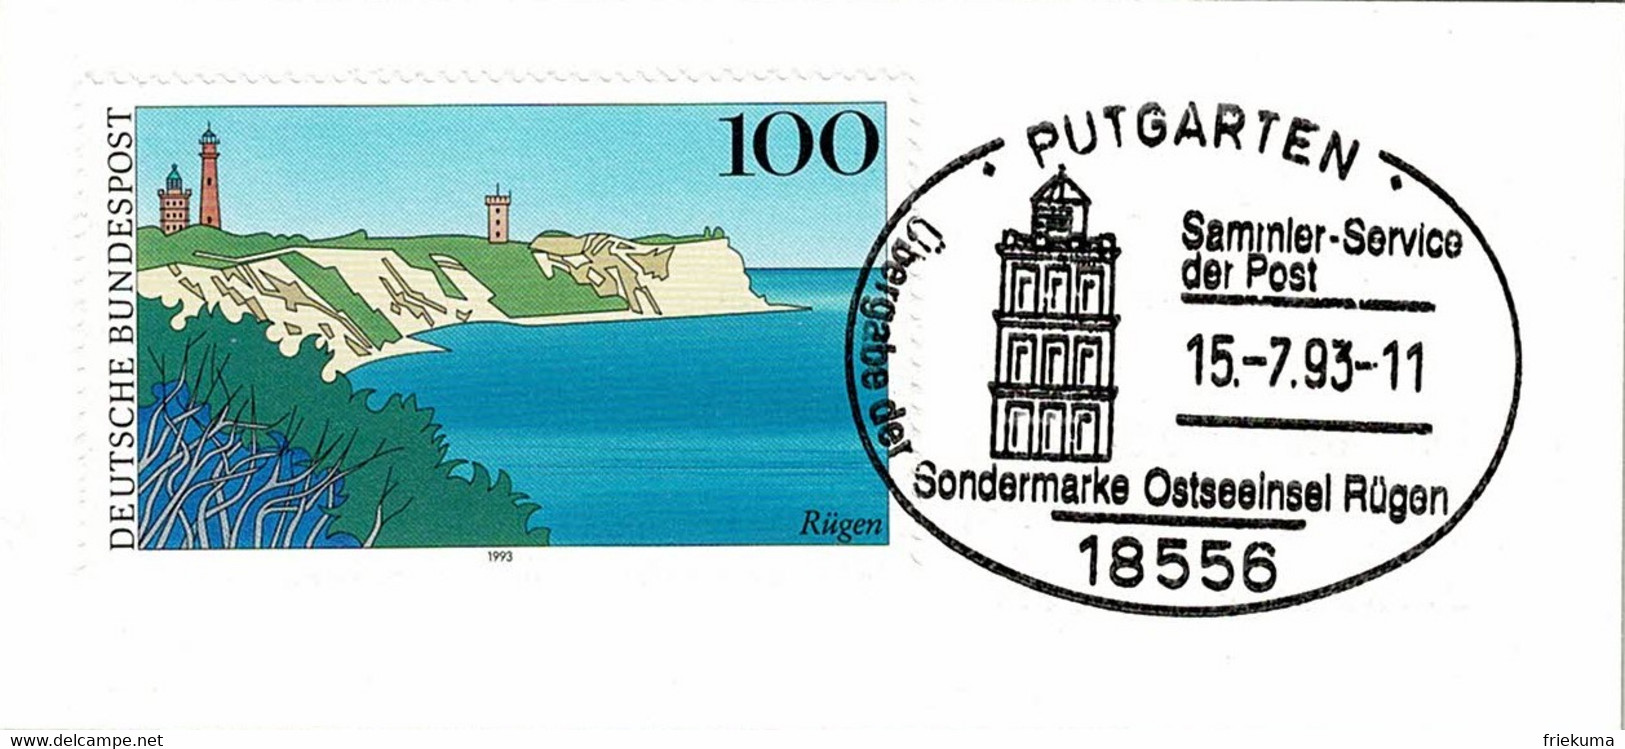 Deutsche Bundespost 1993, Sonderstempel Ostseeinsel Rügen Putgarten - Inseln